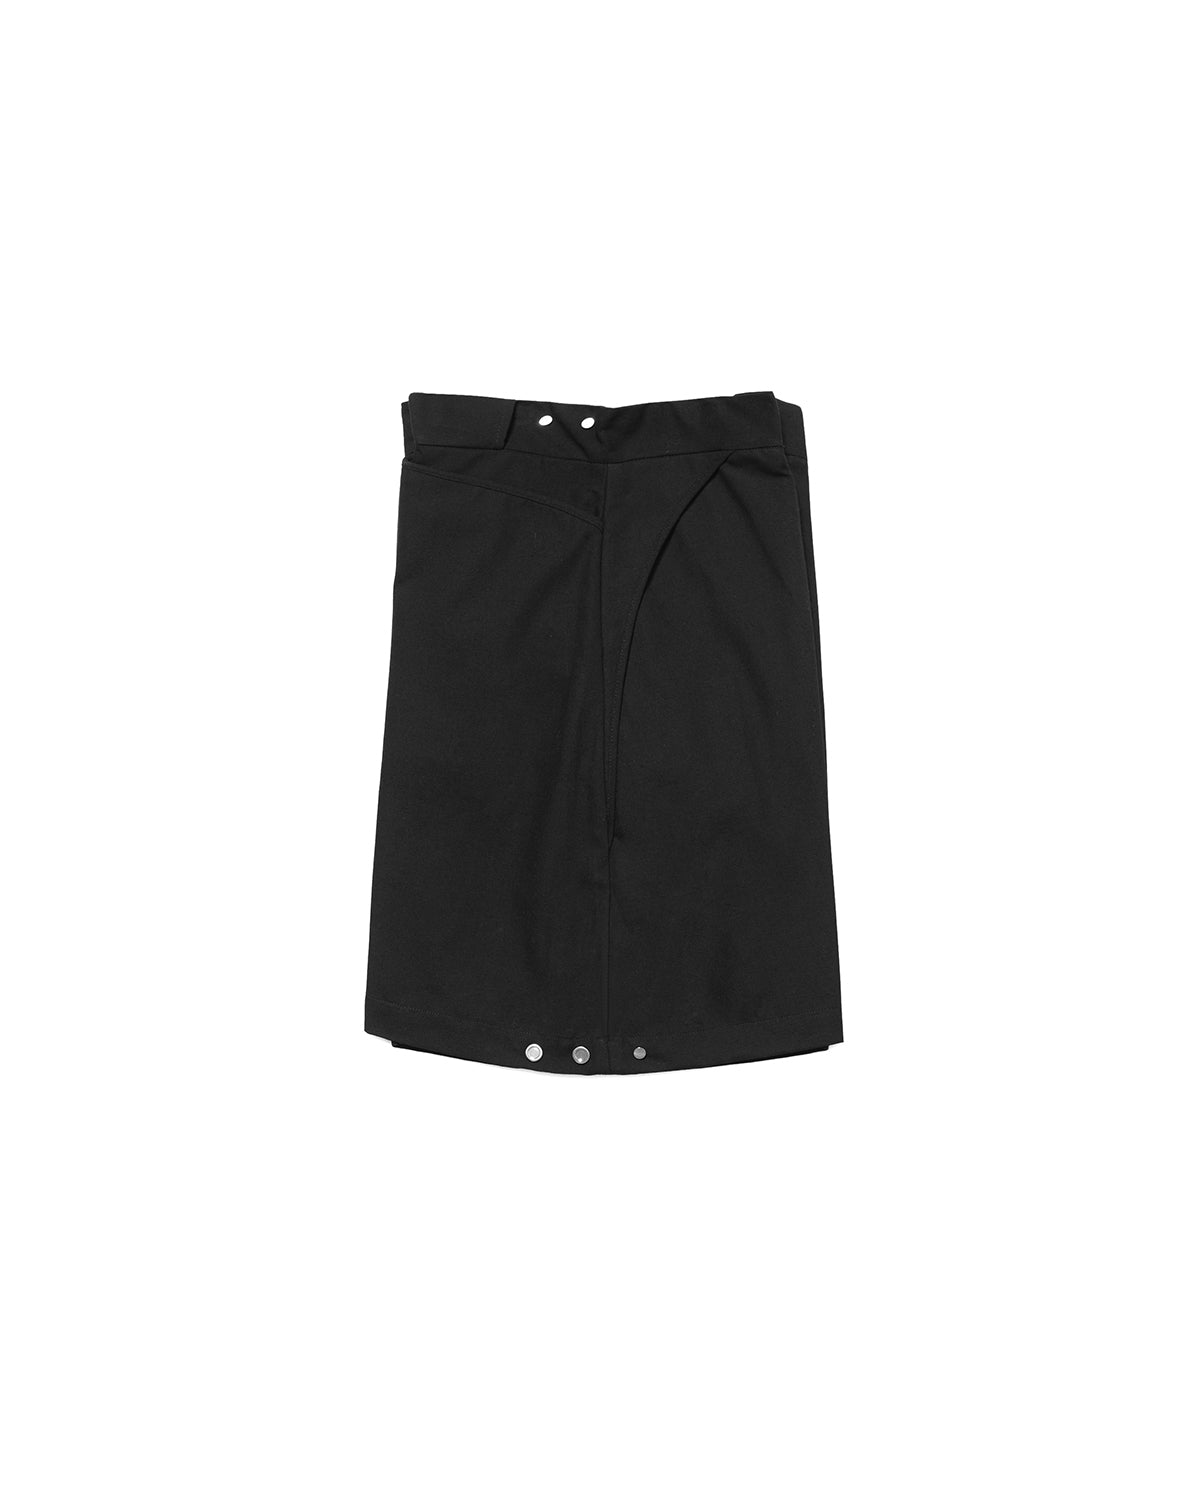 Ockham Black Shorts